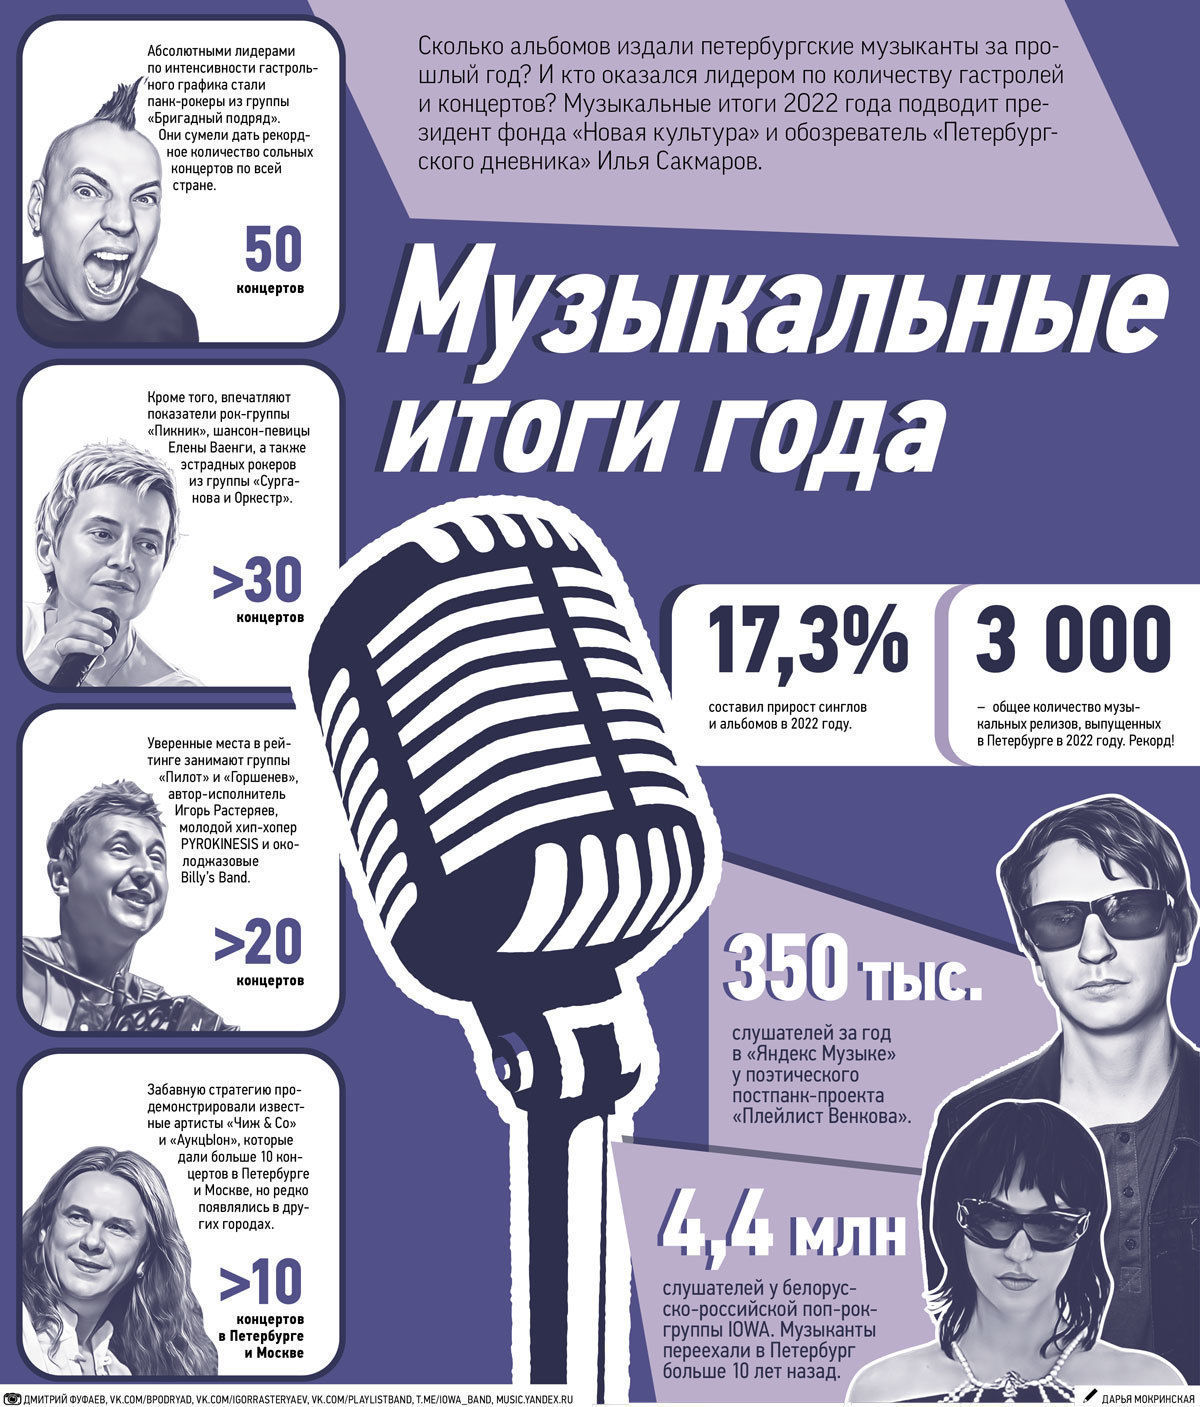 «Яндекс-музыка» подвела музыкальные итоги 2023 года: где их можно посмотреть